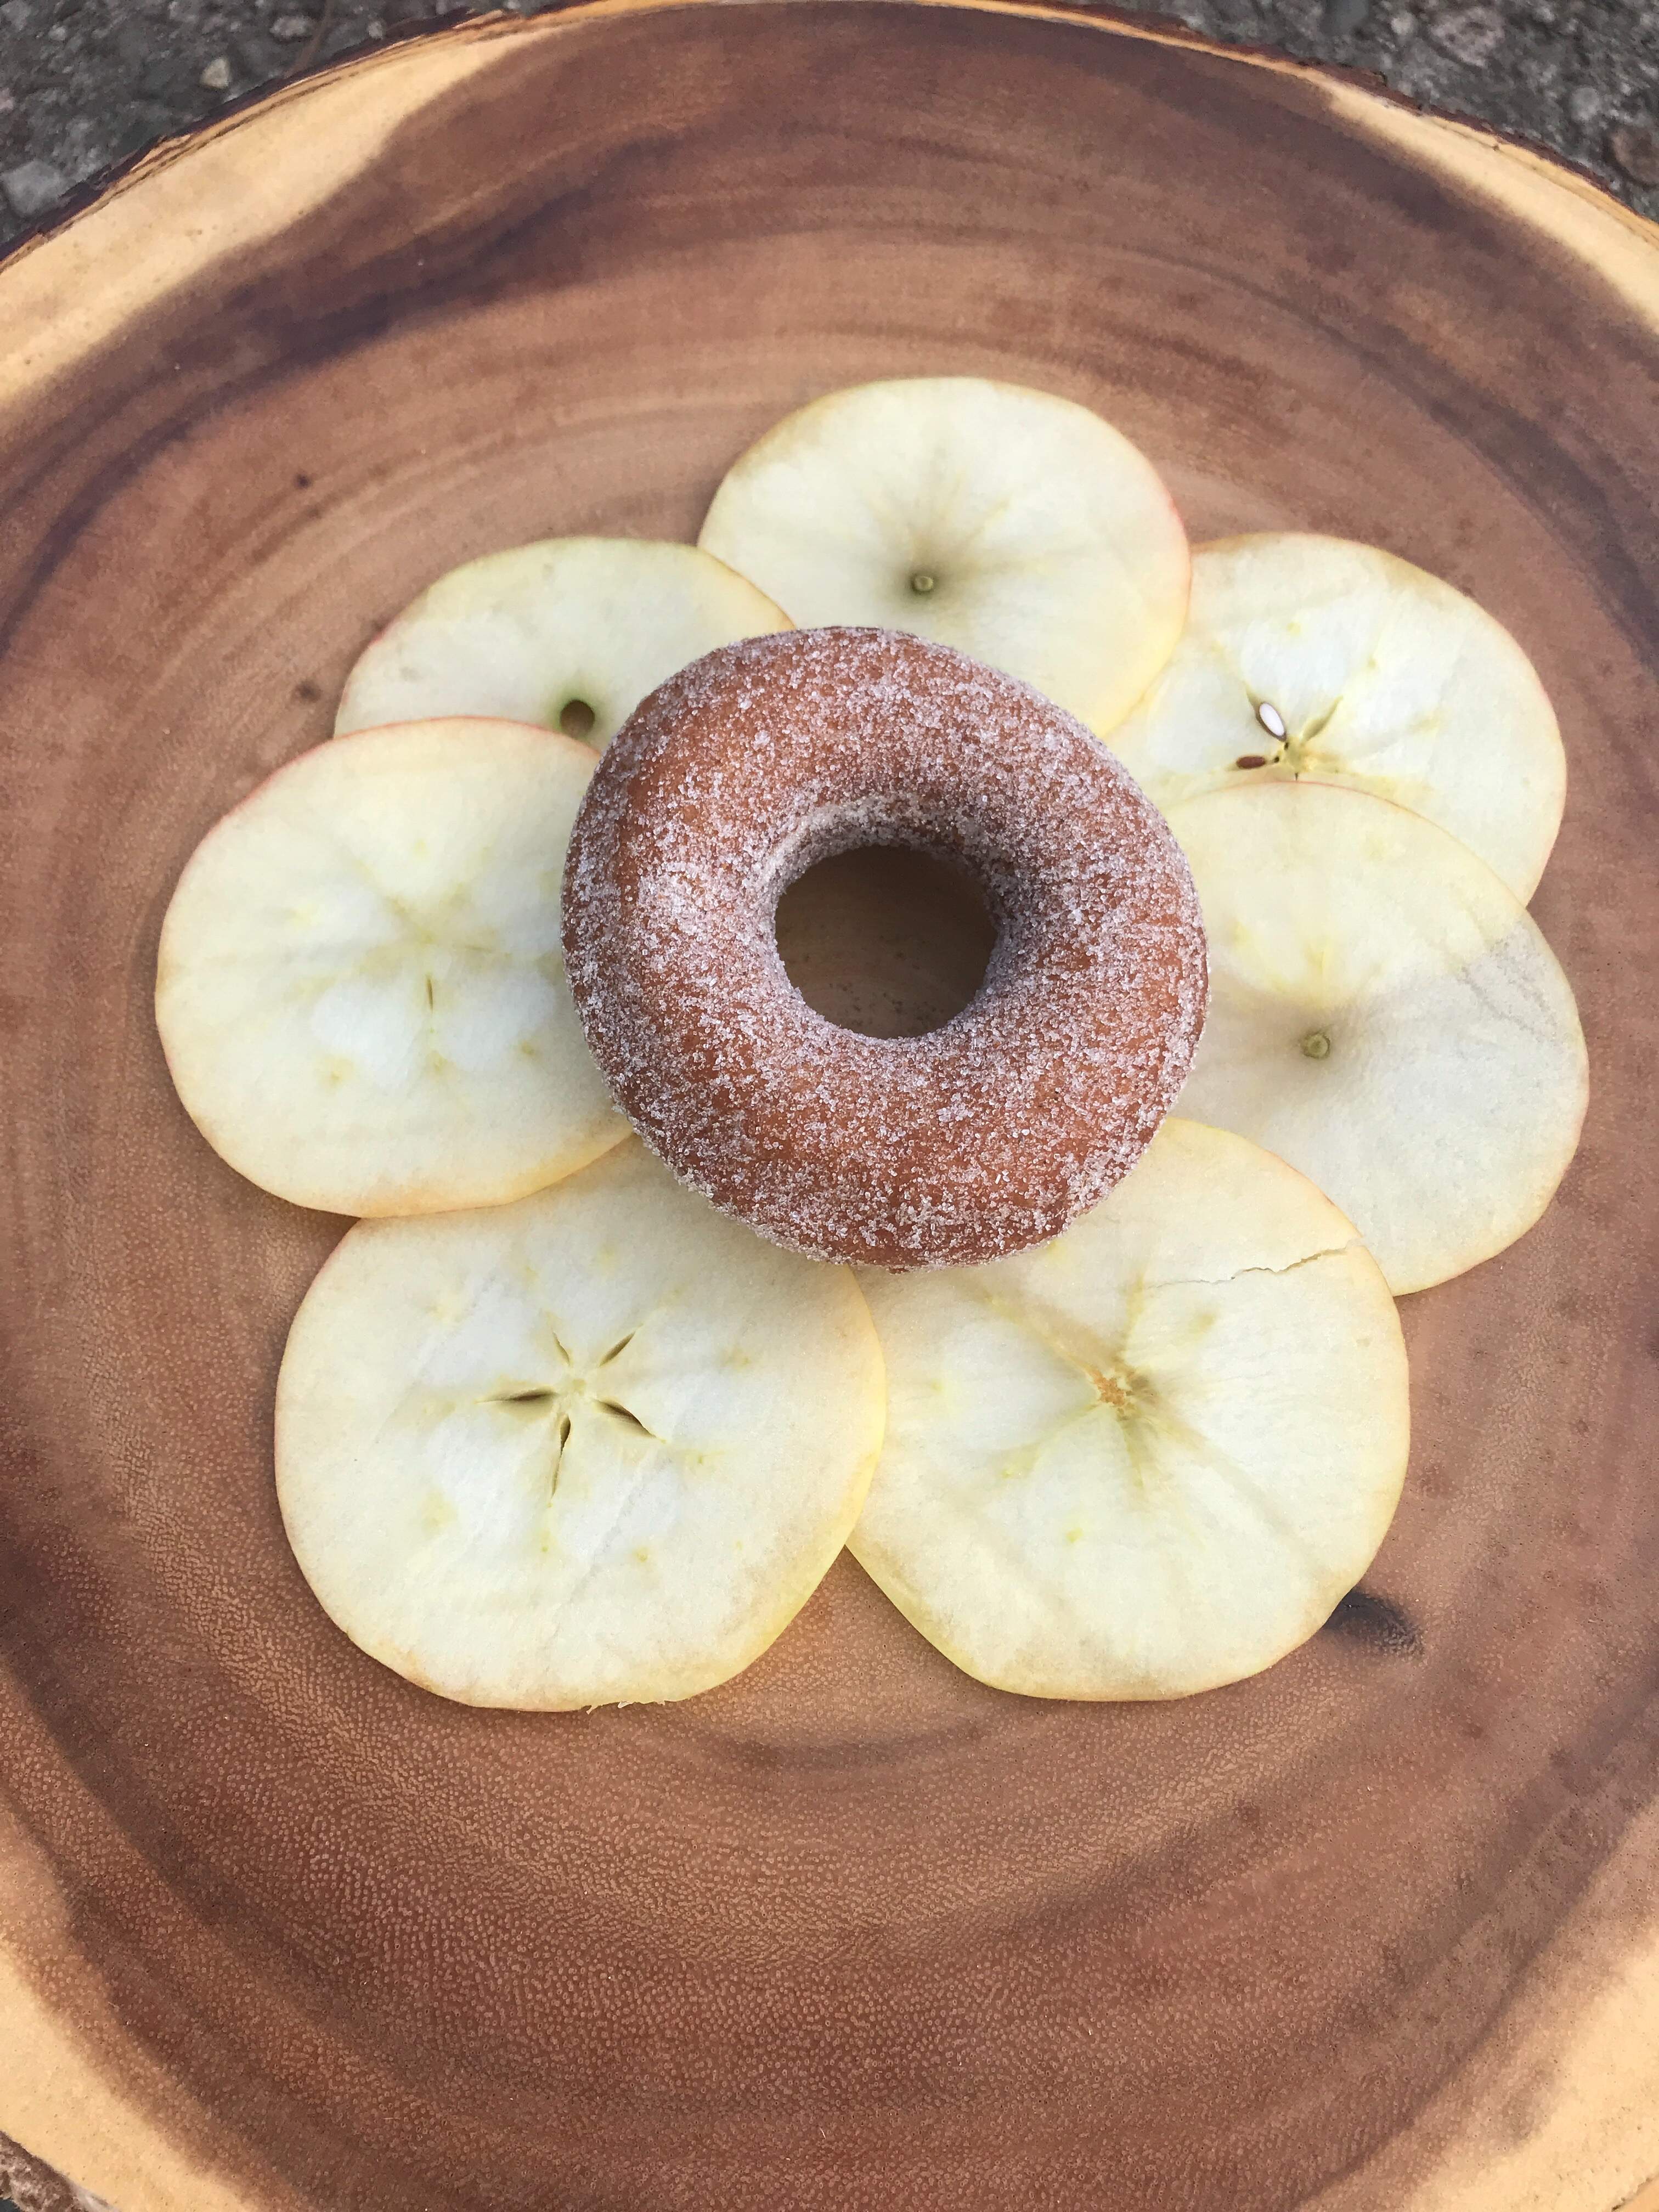 Apple cider cake donuts